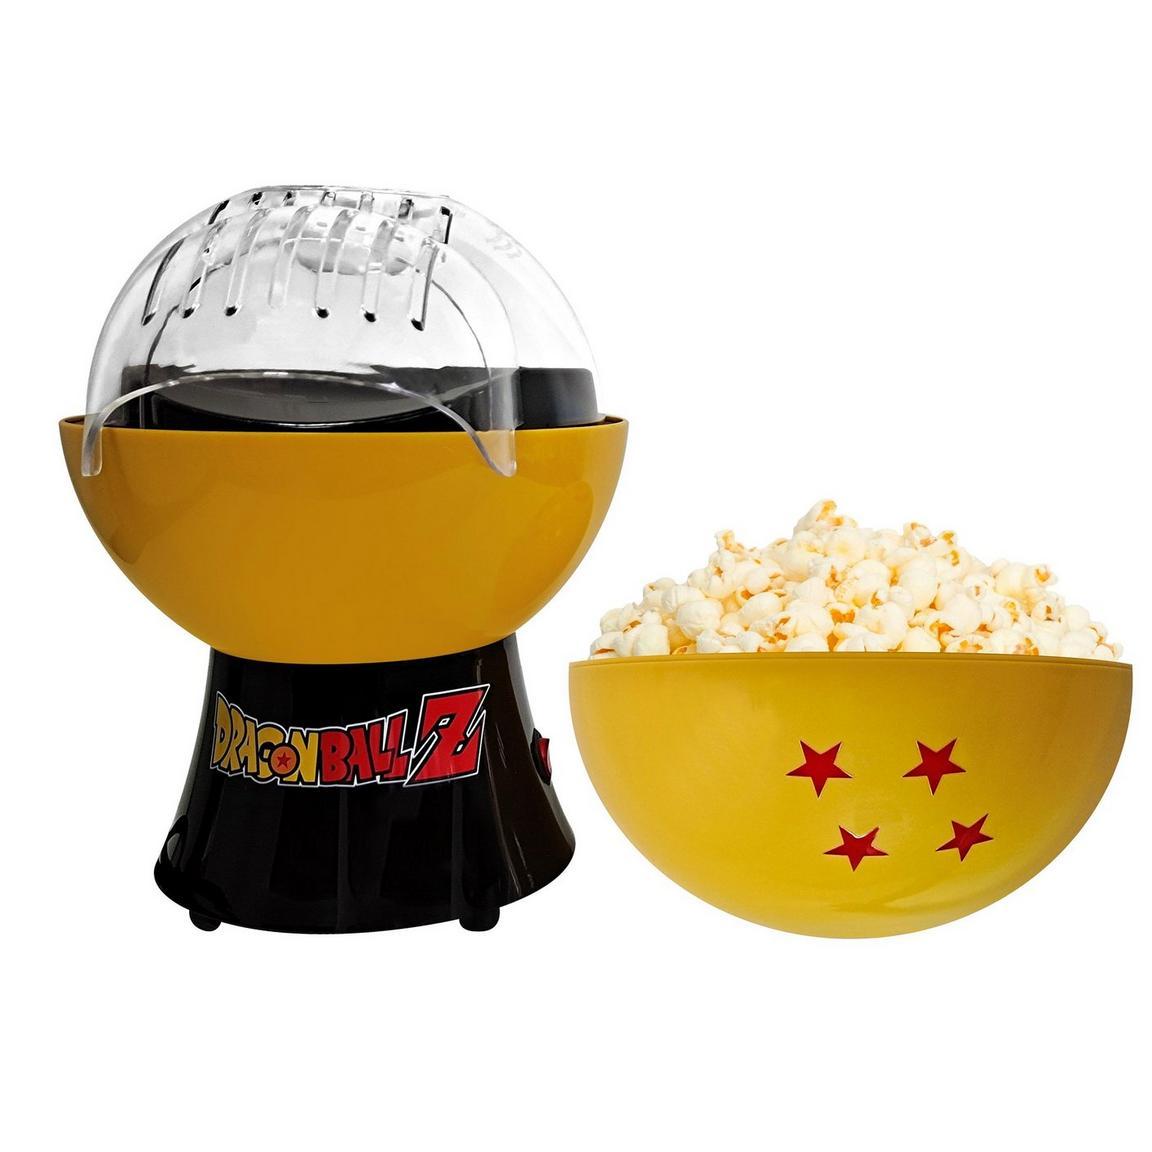 Dragon Ball Z Popcorn Maker for $25